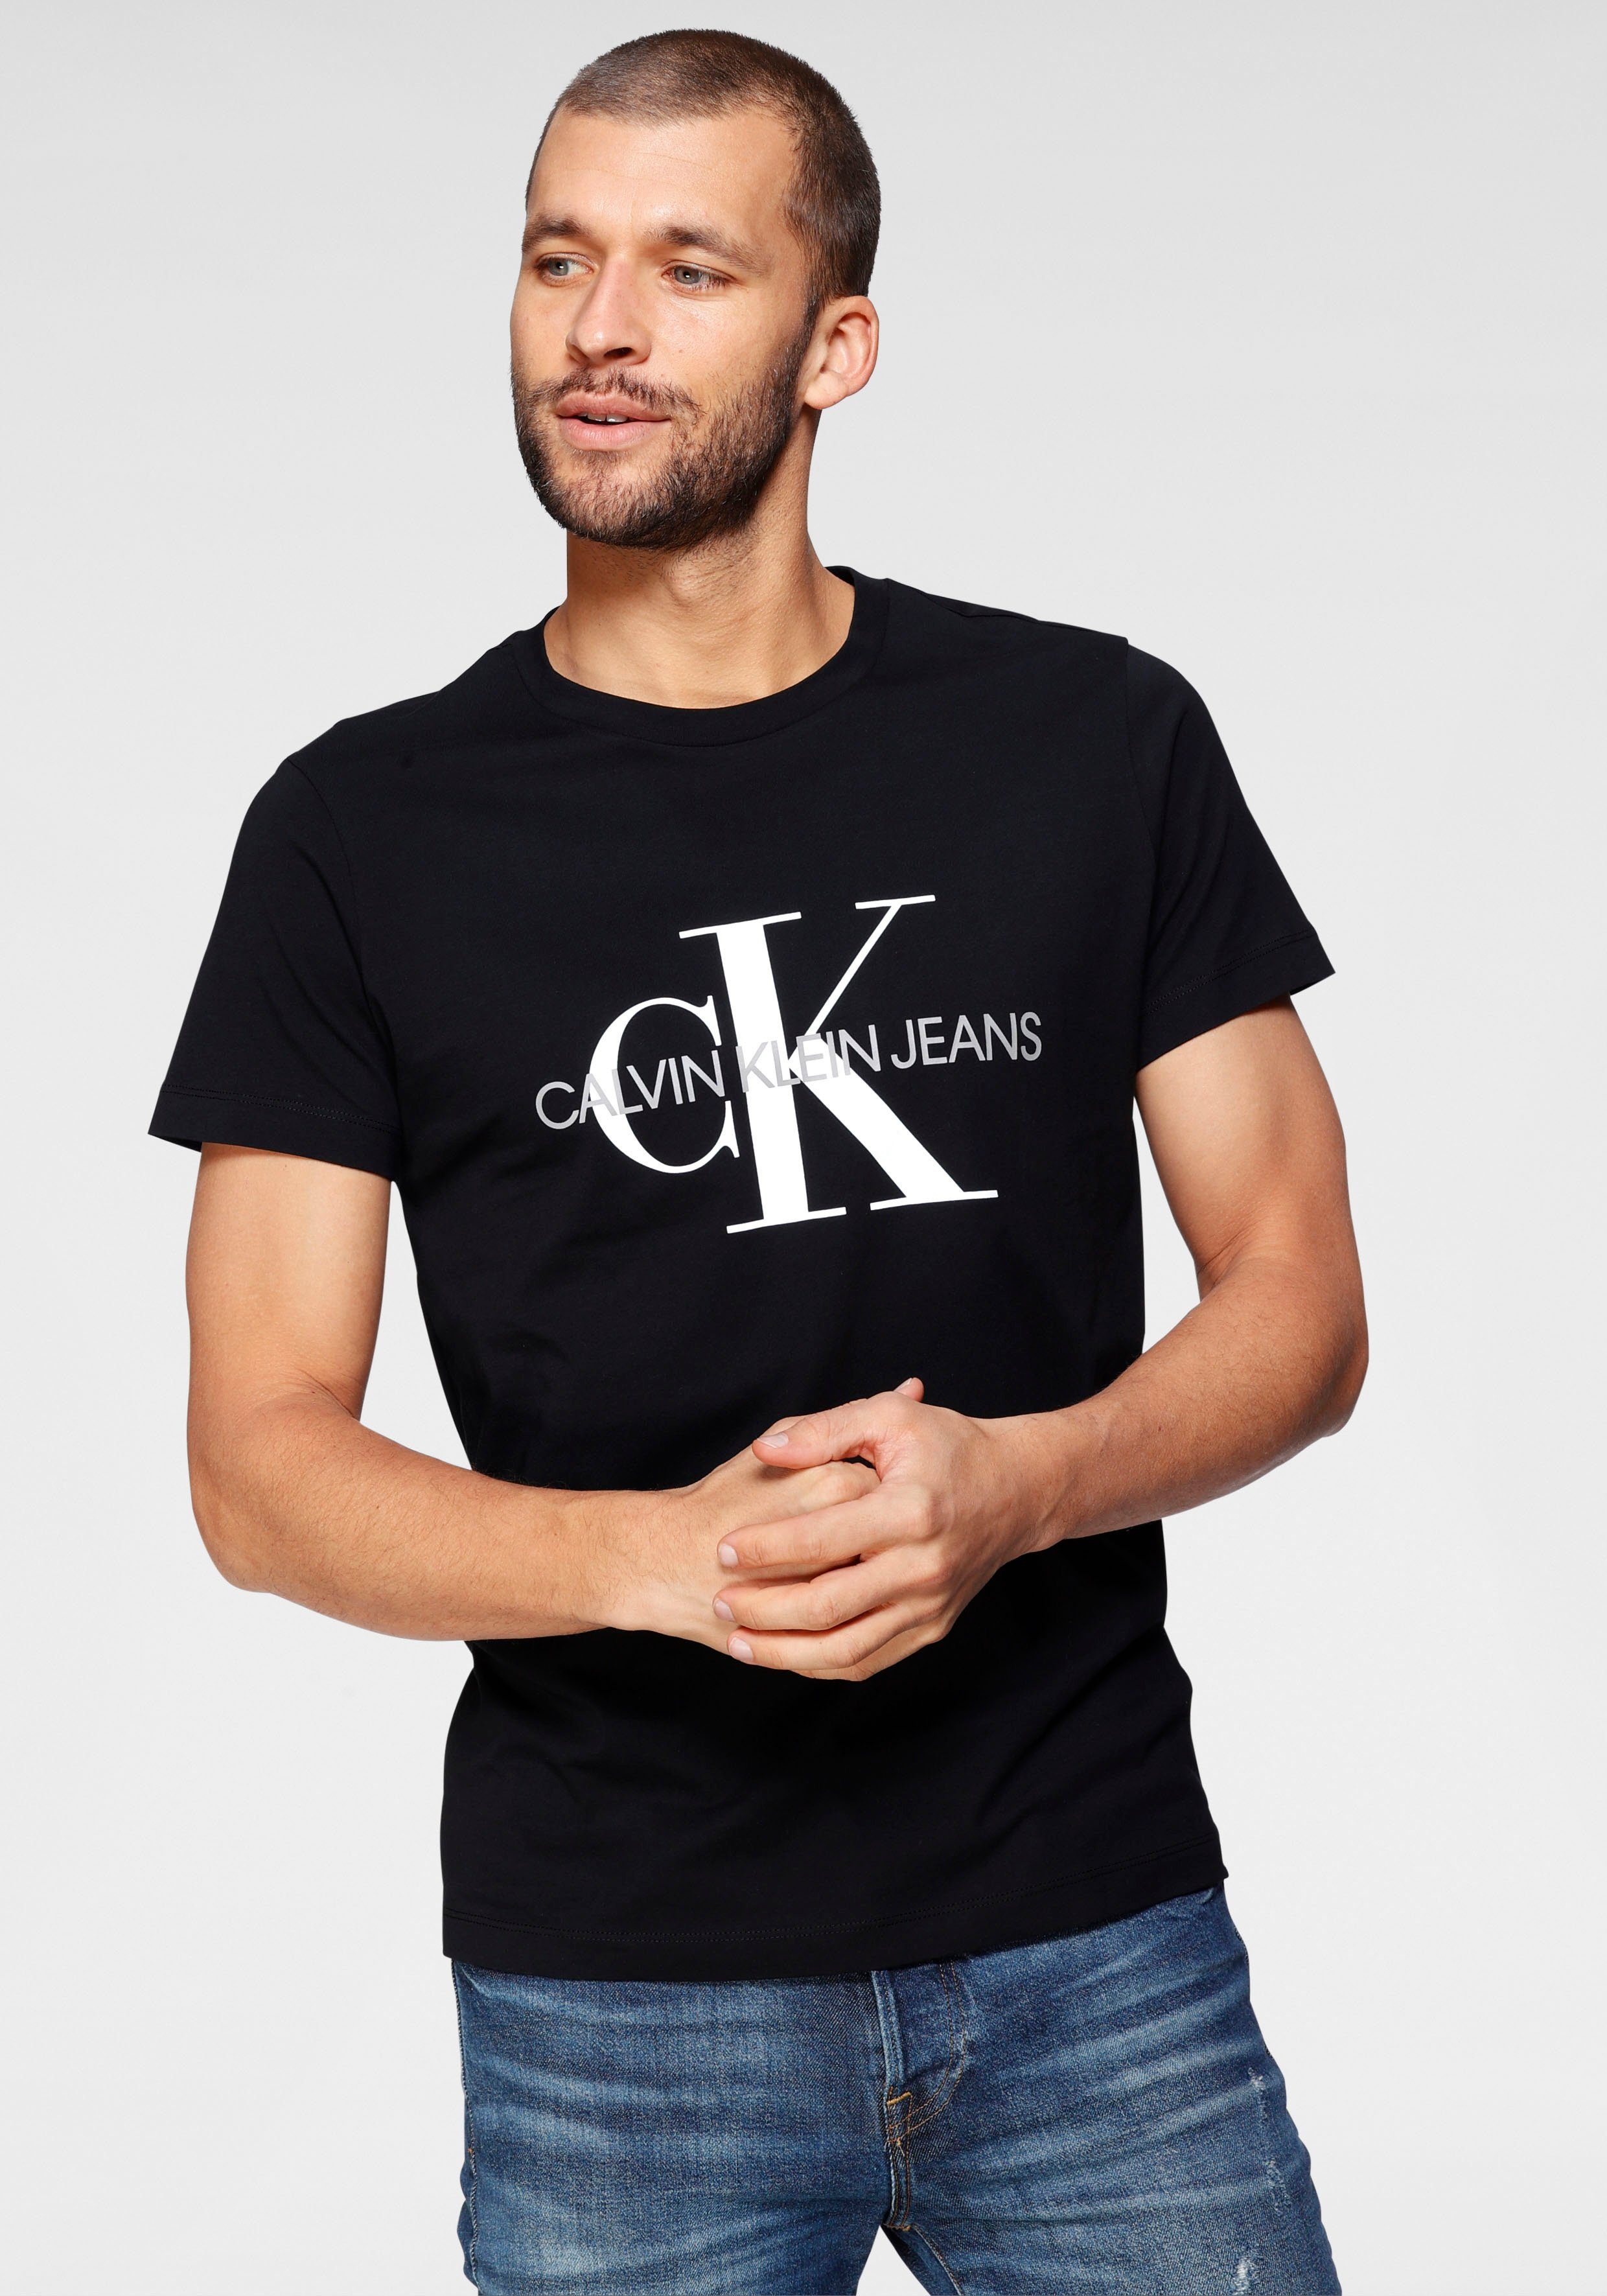 En Verblinding huiswerk maken Calvin Klein T-shirts heren online kopen | Shop nu | OTTO